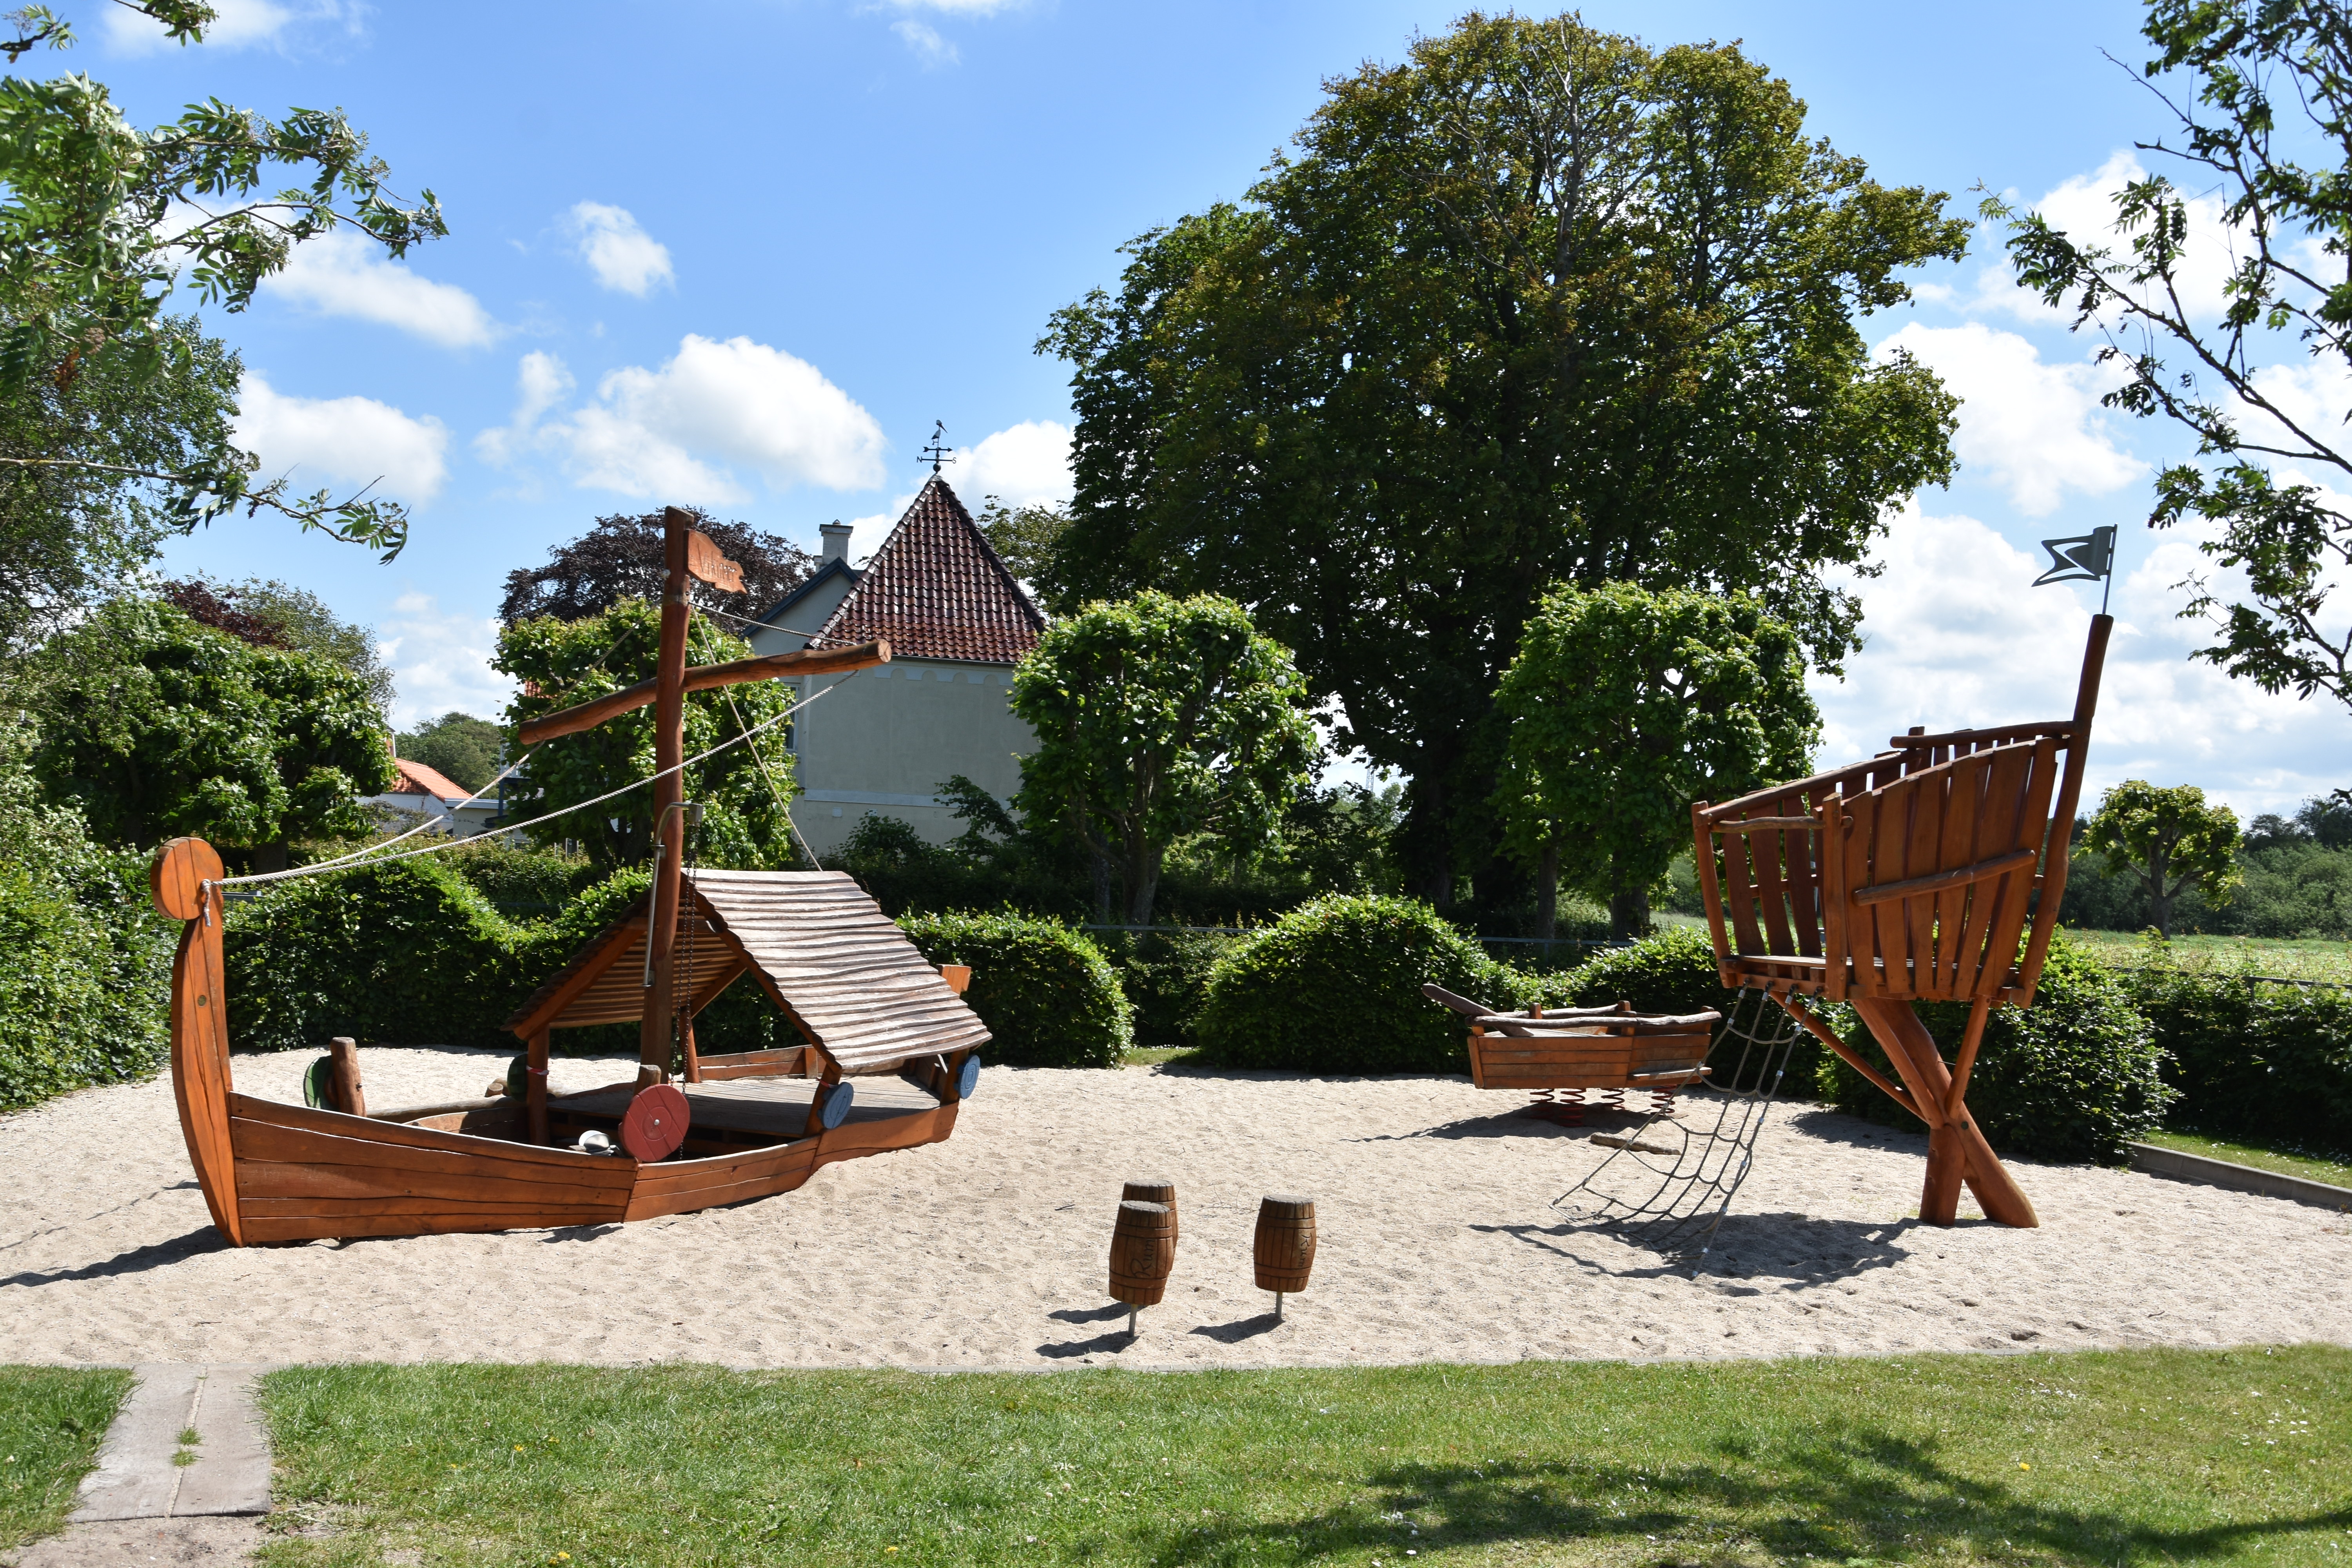 The viking playground in Ribe, Denmark (My New Danish Life)